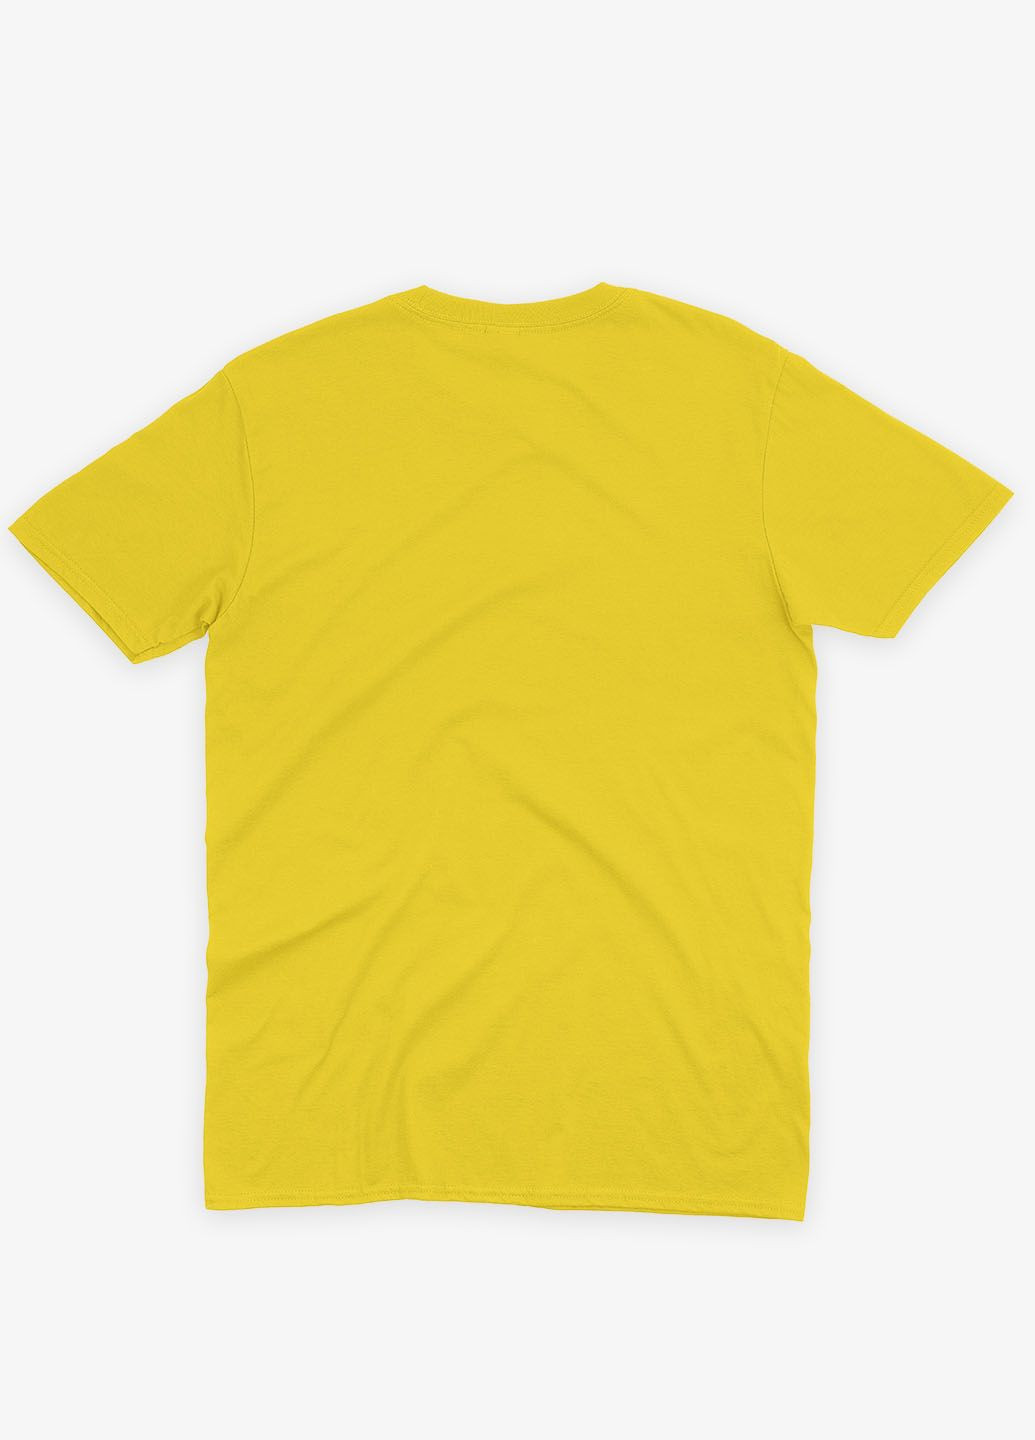 Желтая демисезонная футболка для мальчика с патриотическим принтом карта украины (ts001-1-sun-005-1-011-b) Modno